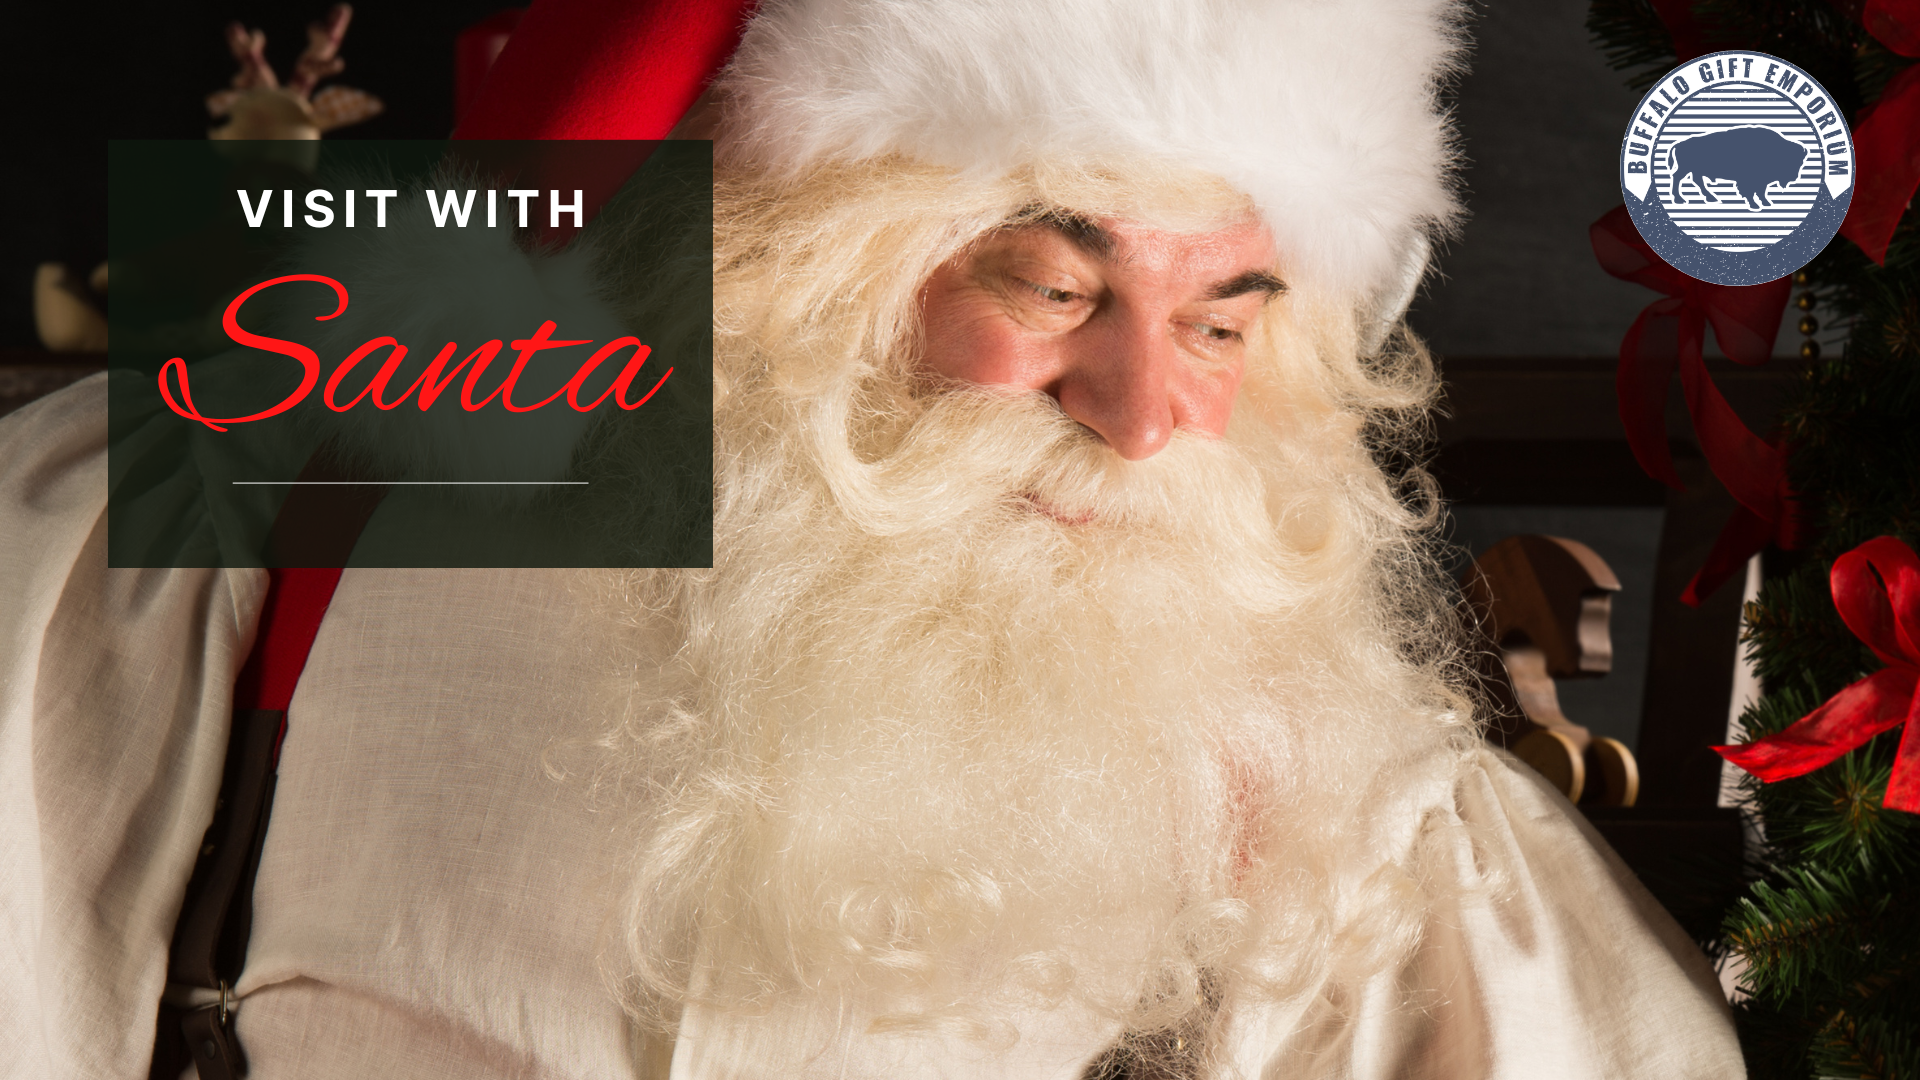 Santa Claus brings holiday cheer to Buffalo Gift Emporium